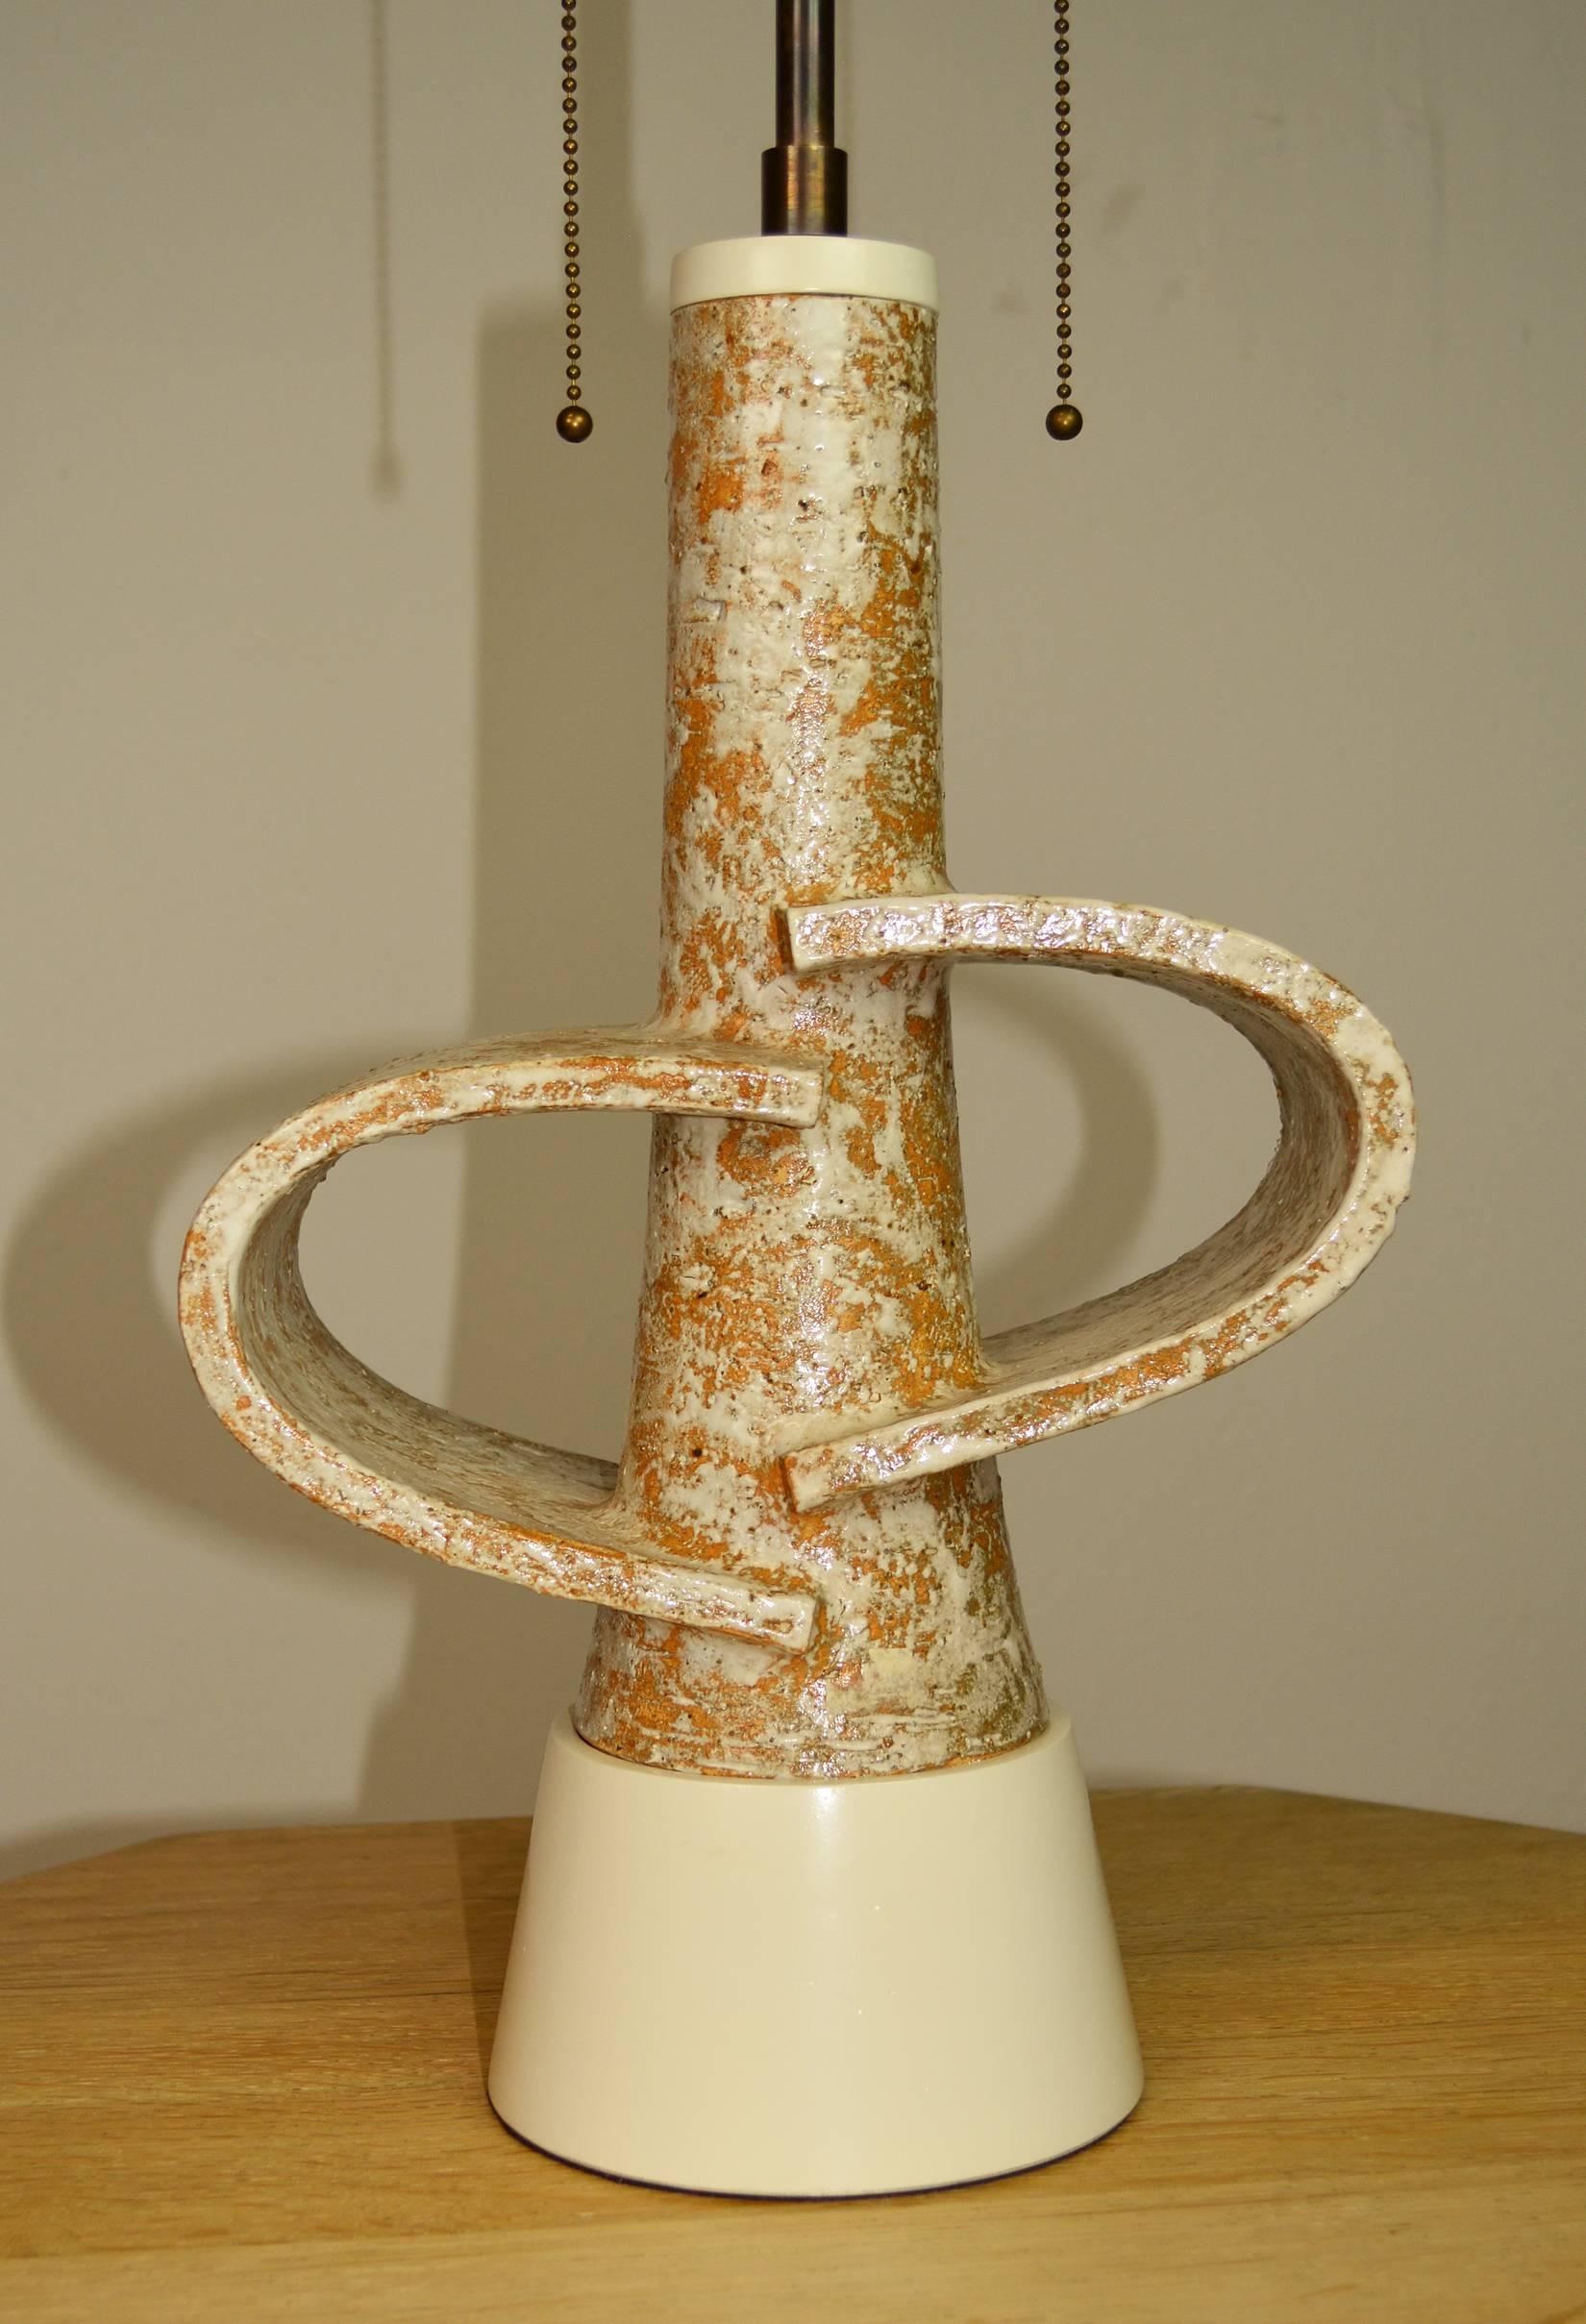 Skulpturale Lampe aus grob glasierter Terrakotta California Studio Pottery auf einem angepassten Sockel aus lackiertem Holz. Neue Doppelsteckdosen aus antikem Messing mit höhenverstellbarem Lampenschirmhalter und französischer geflochtener